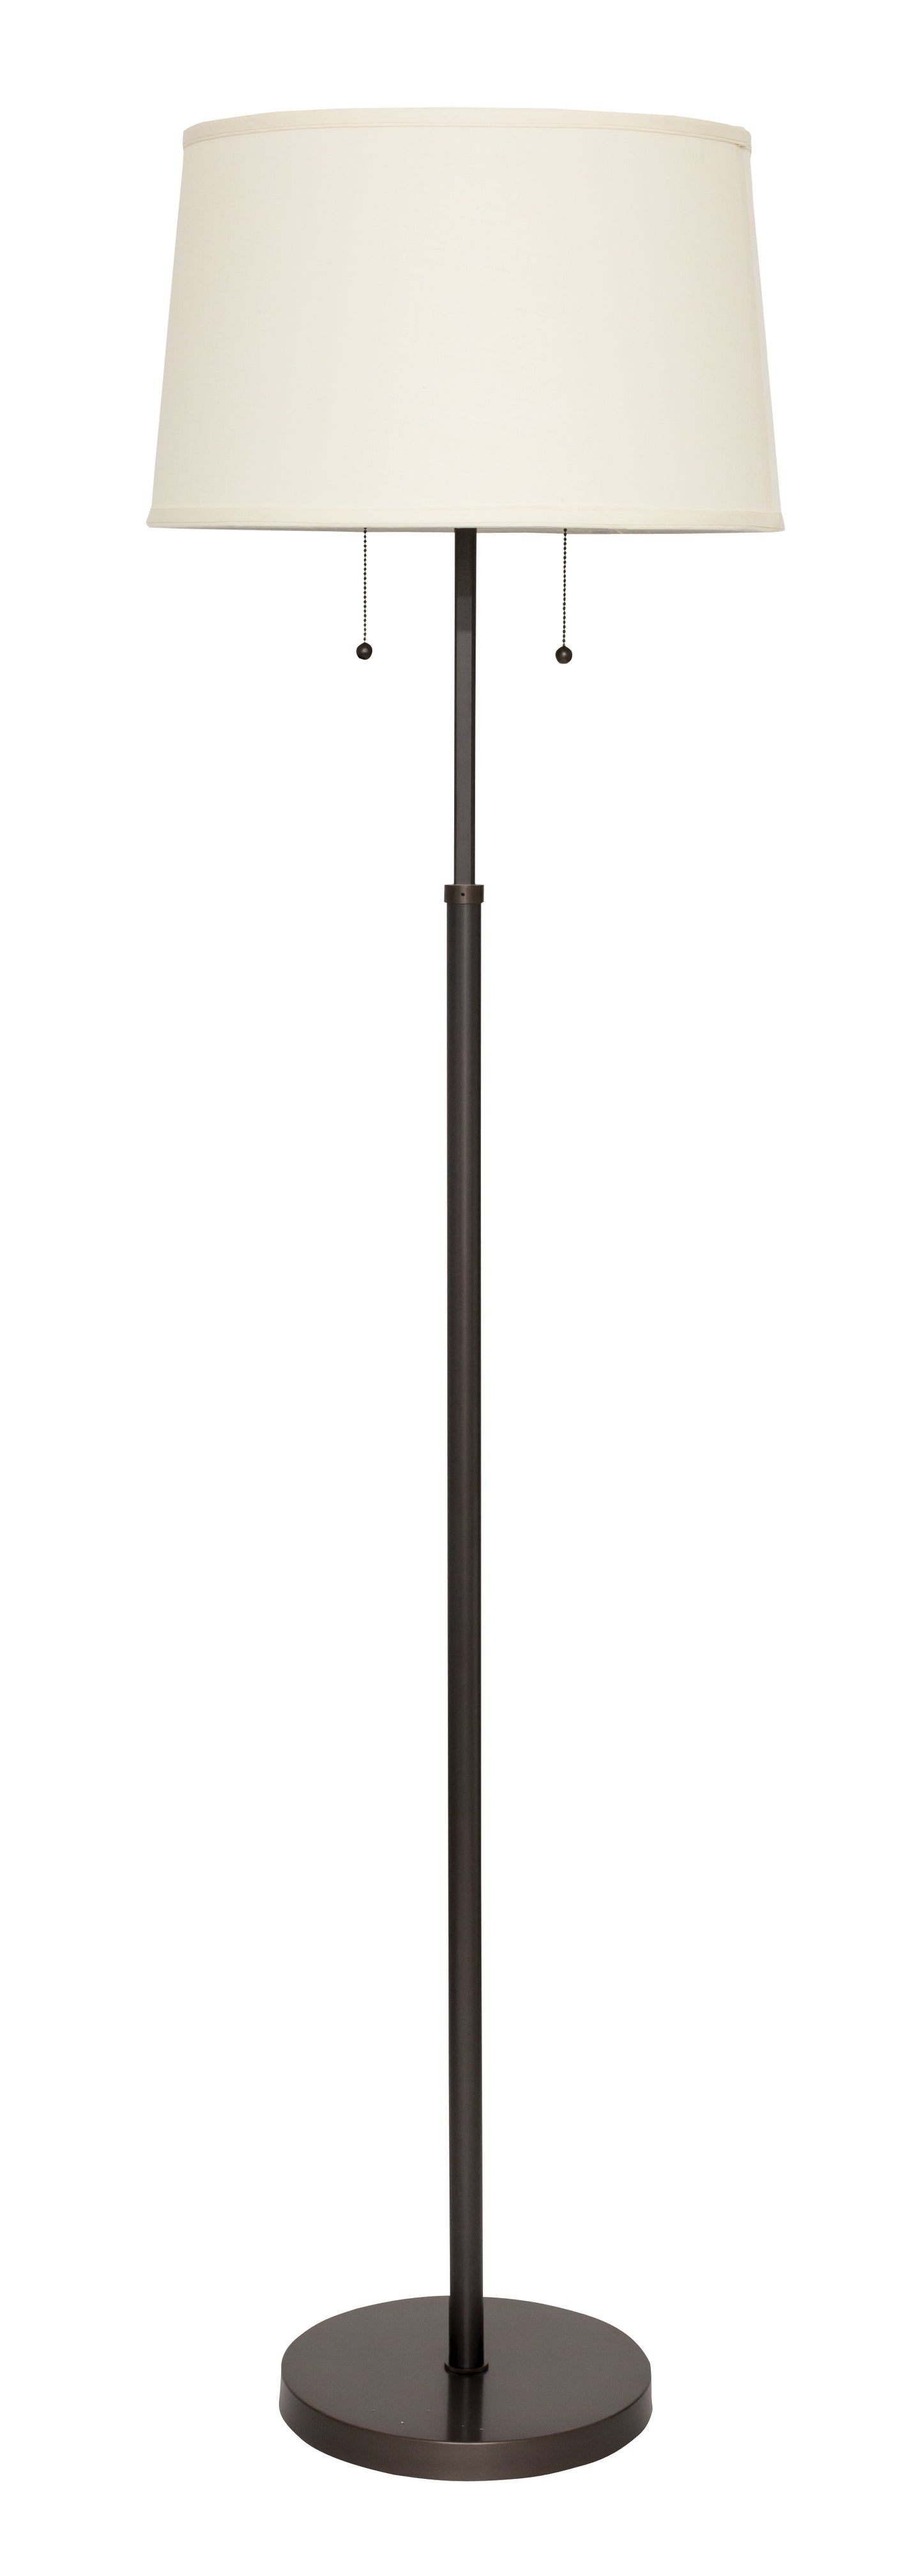 House of Troy Averill Adjustable Floor Lamp Oil Rubbed Bronze AV100-OB